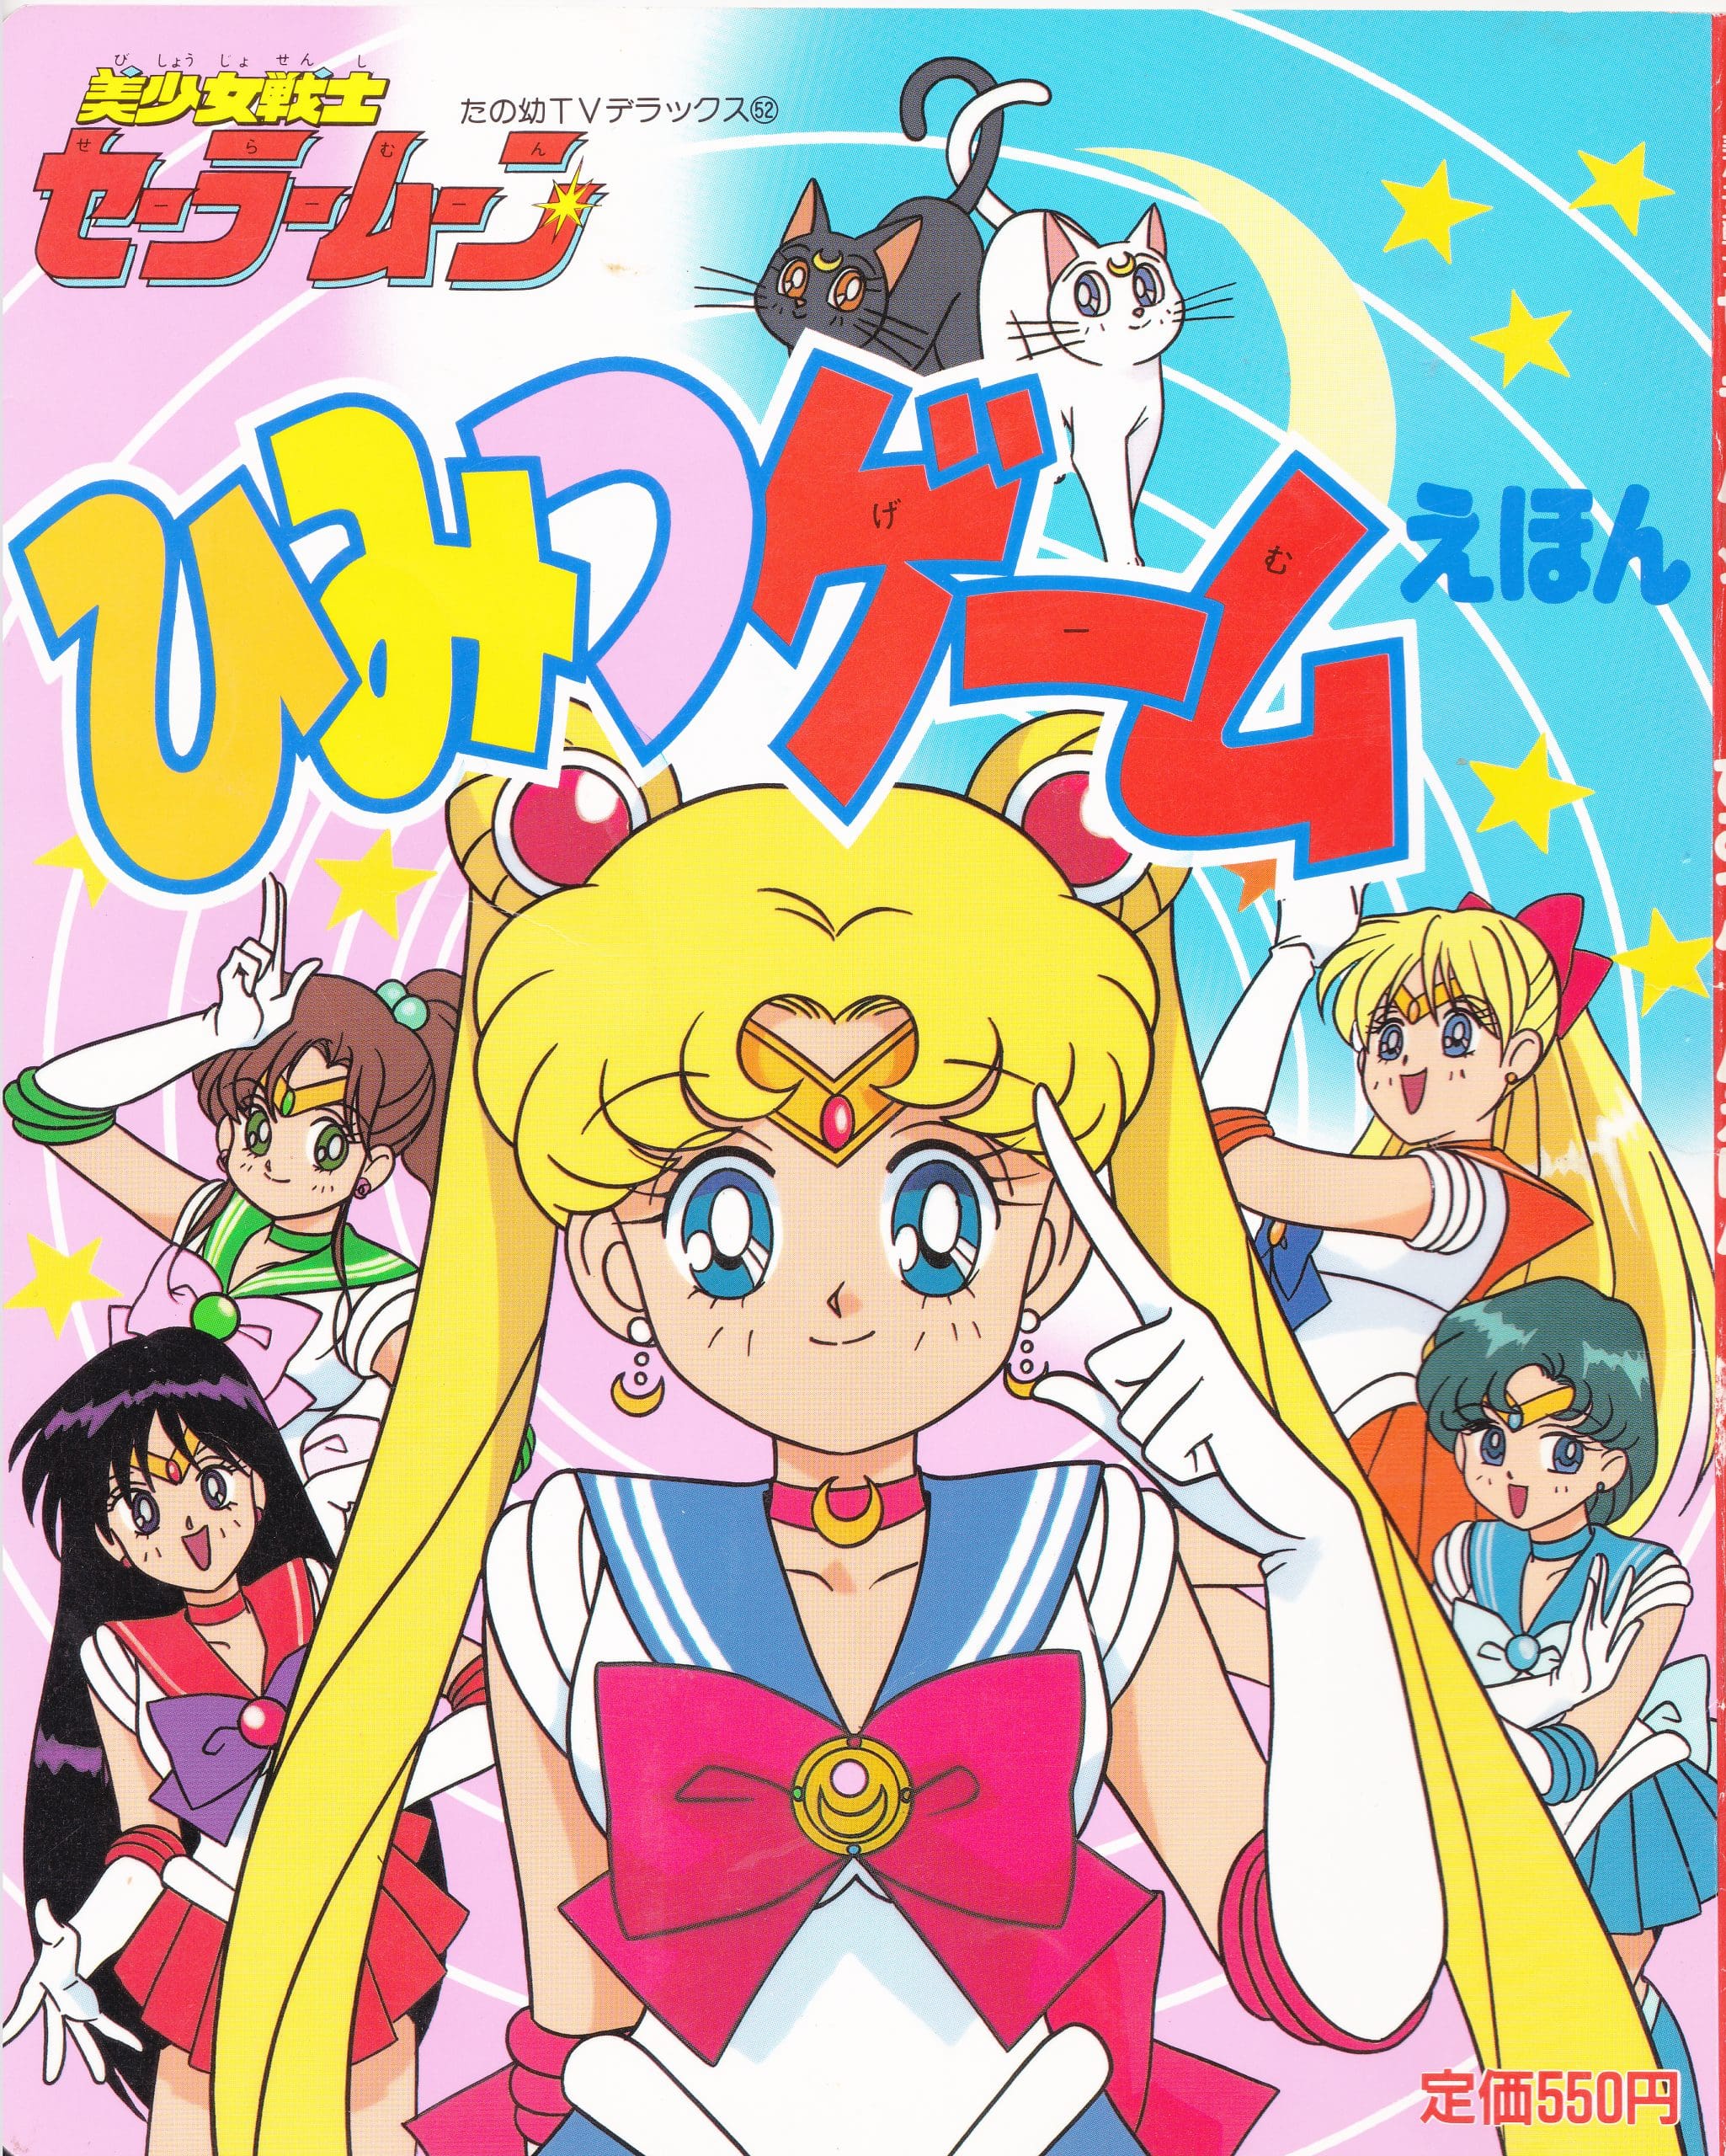 Sailor Moon the movie memorial album art book